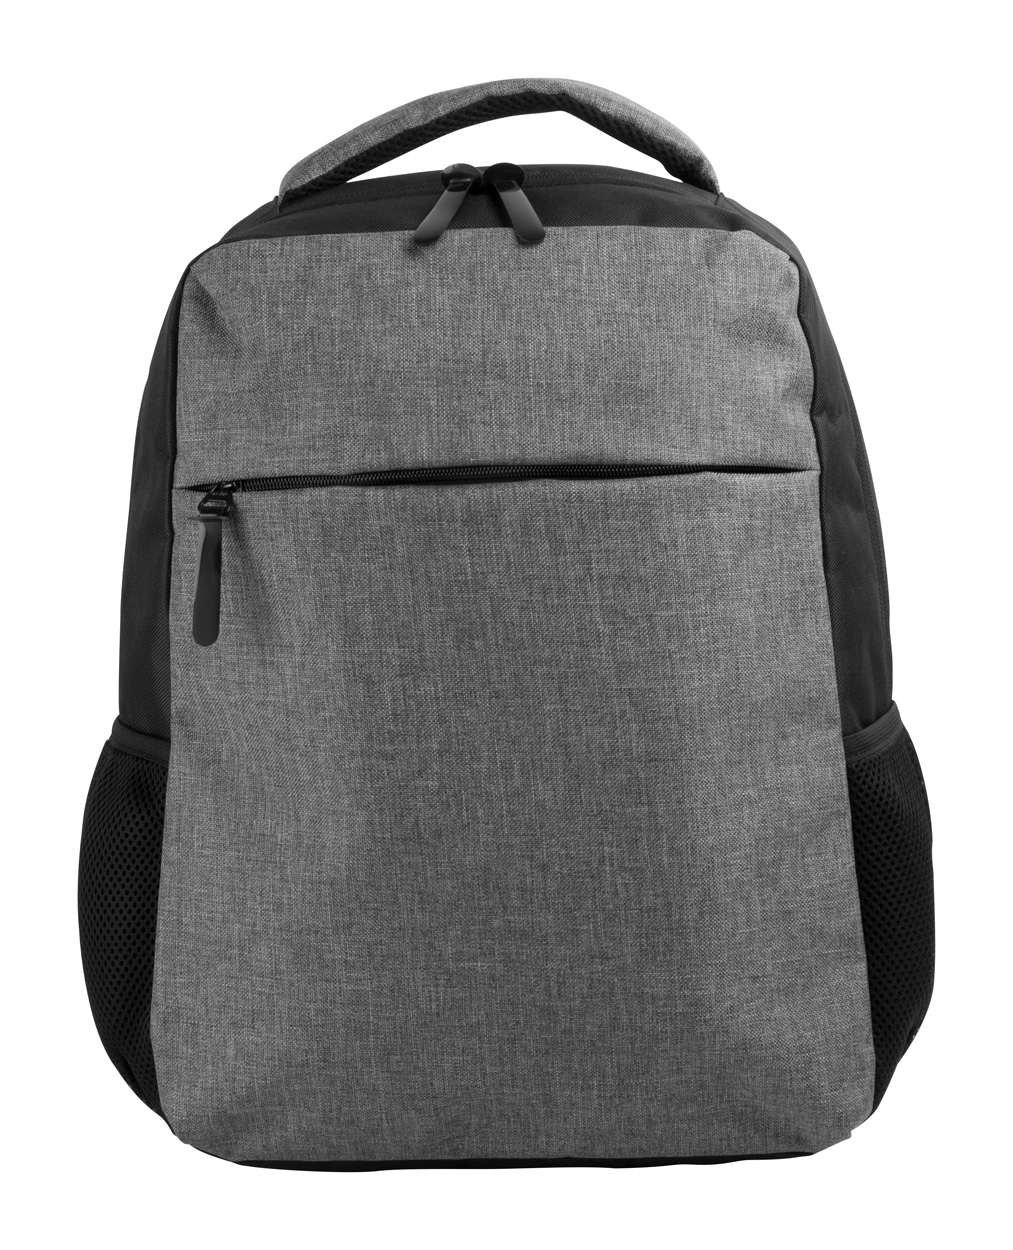 Polyesterový městský batoh SCUBA B s prostorem na notebook - šedá